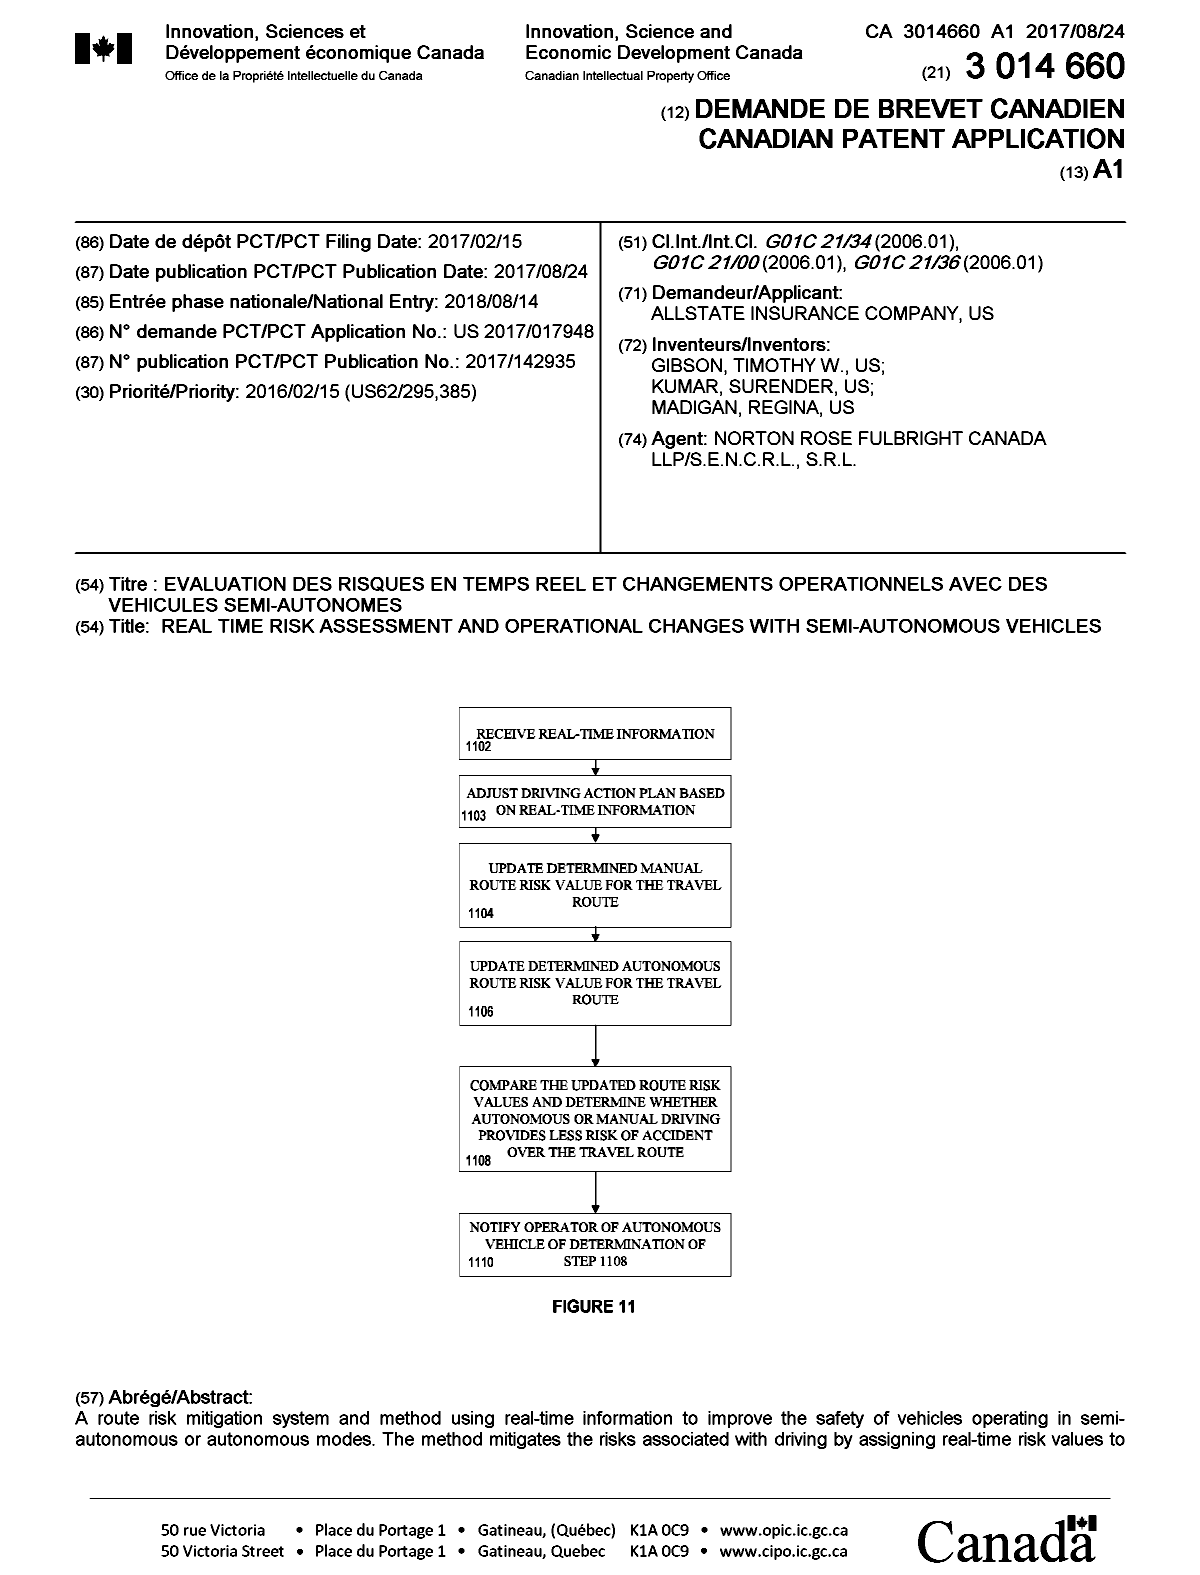 Document de brevet canadien 3014660. Page couverture 20171224. Image 1 de 2